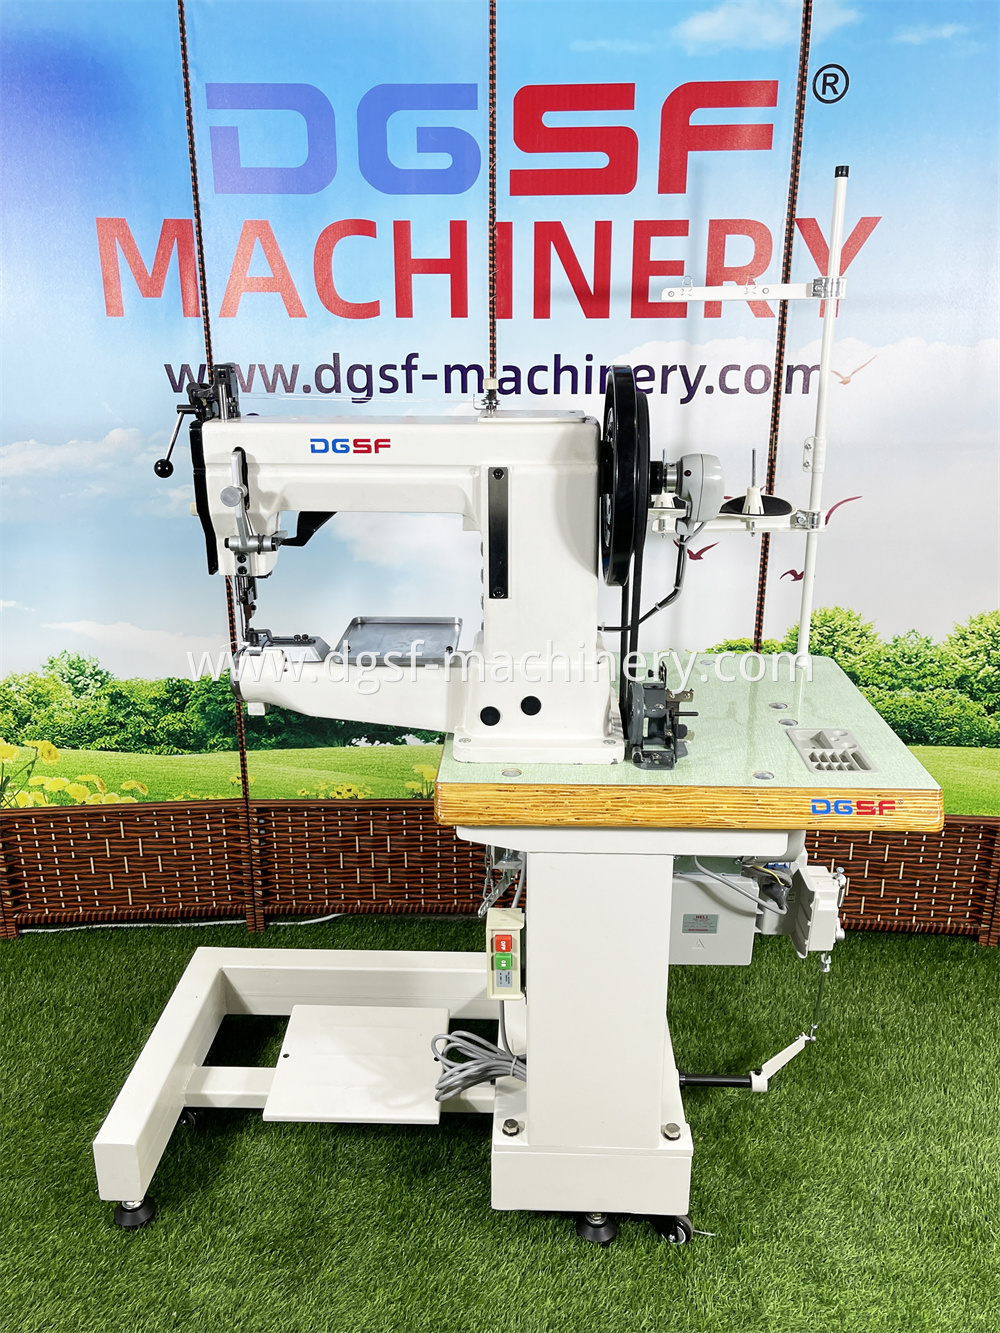 Heavy Duty Cylinder Bed Sewing Machine Lx 205b 1 Jpg